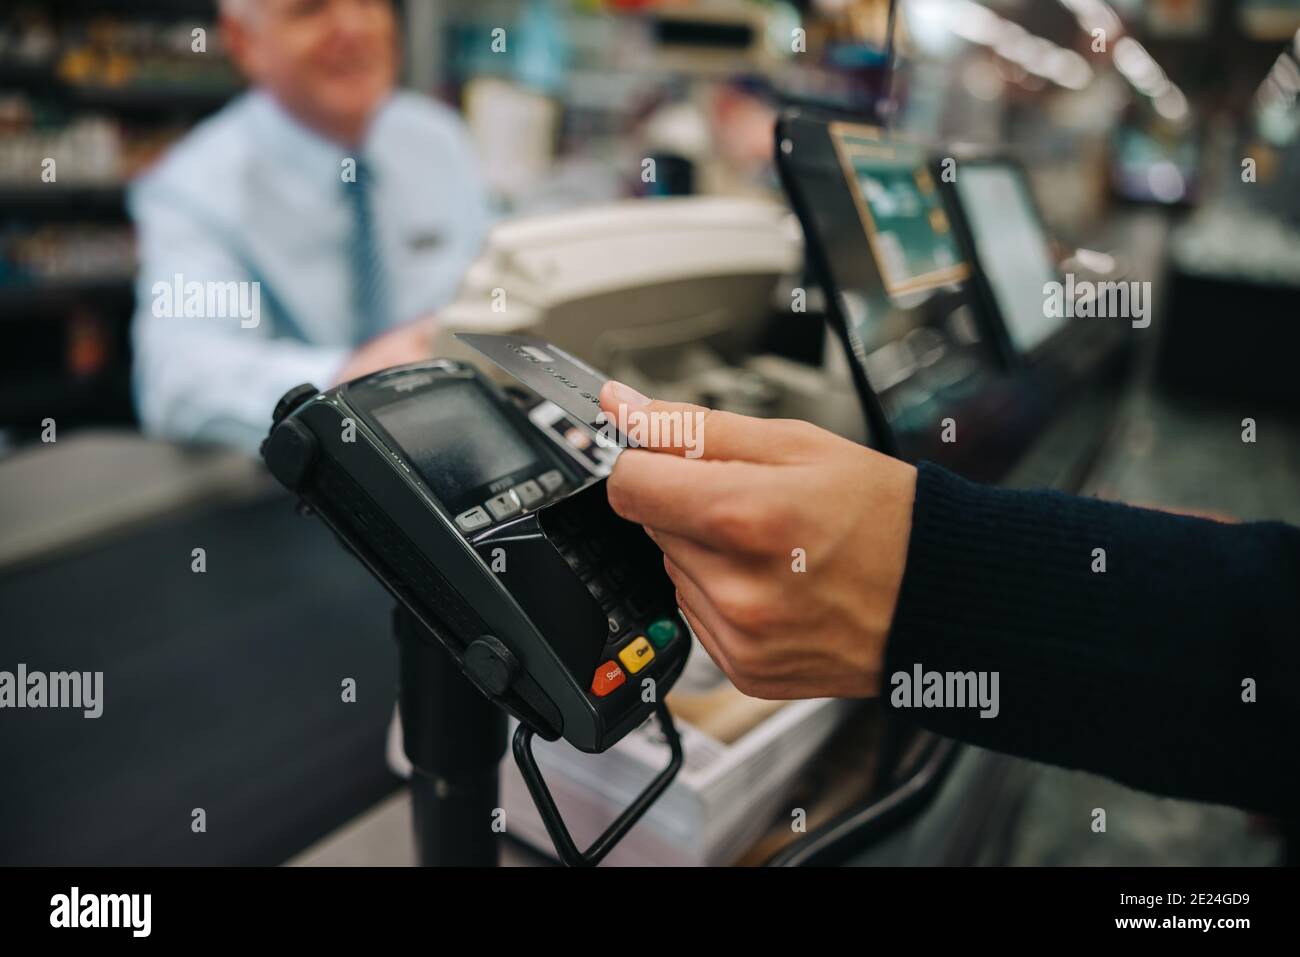 Nahaufnahme eines männlichen Kunden, der eine kontaktlose Zahlung mit seiner Kreditkarte im Lebensmittelgeschäft macht. Der Käufer zahlt für seinen Einkauf mit einer Kreditkarte. Stockfoto